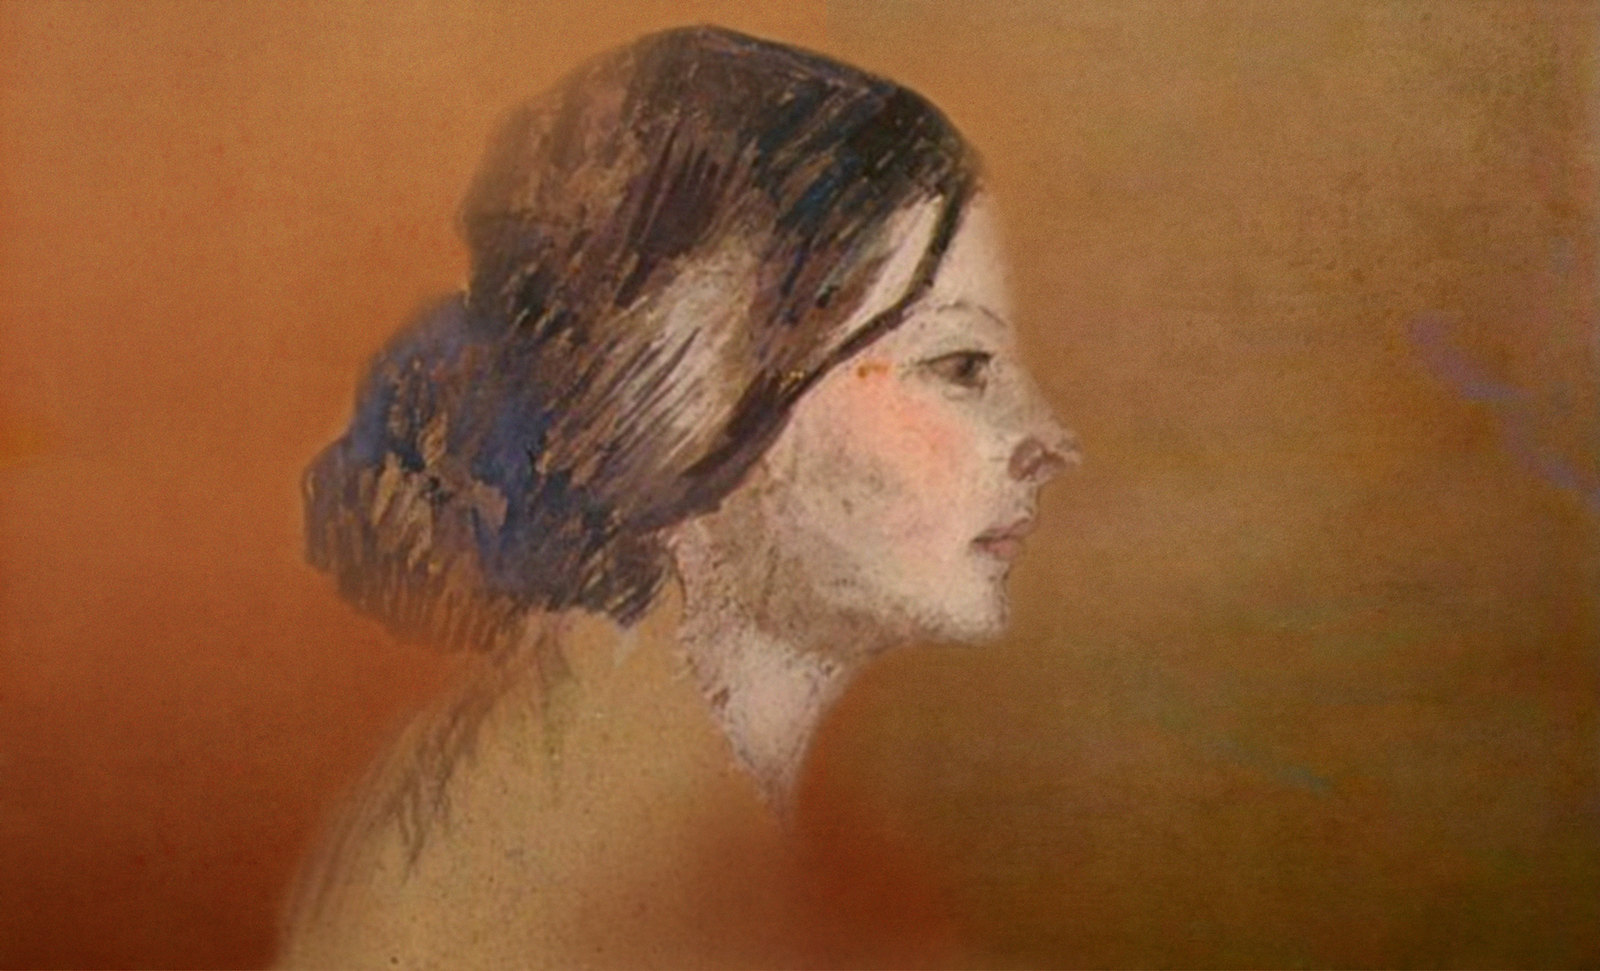 Las Madeleines escuchando la soleada soledad, descripciones de Henri de Toulouse Lautrec (1889) y Pablo Picasso (1904).